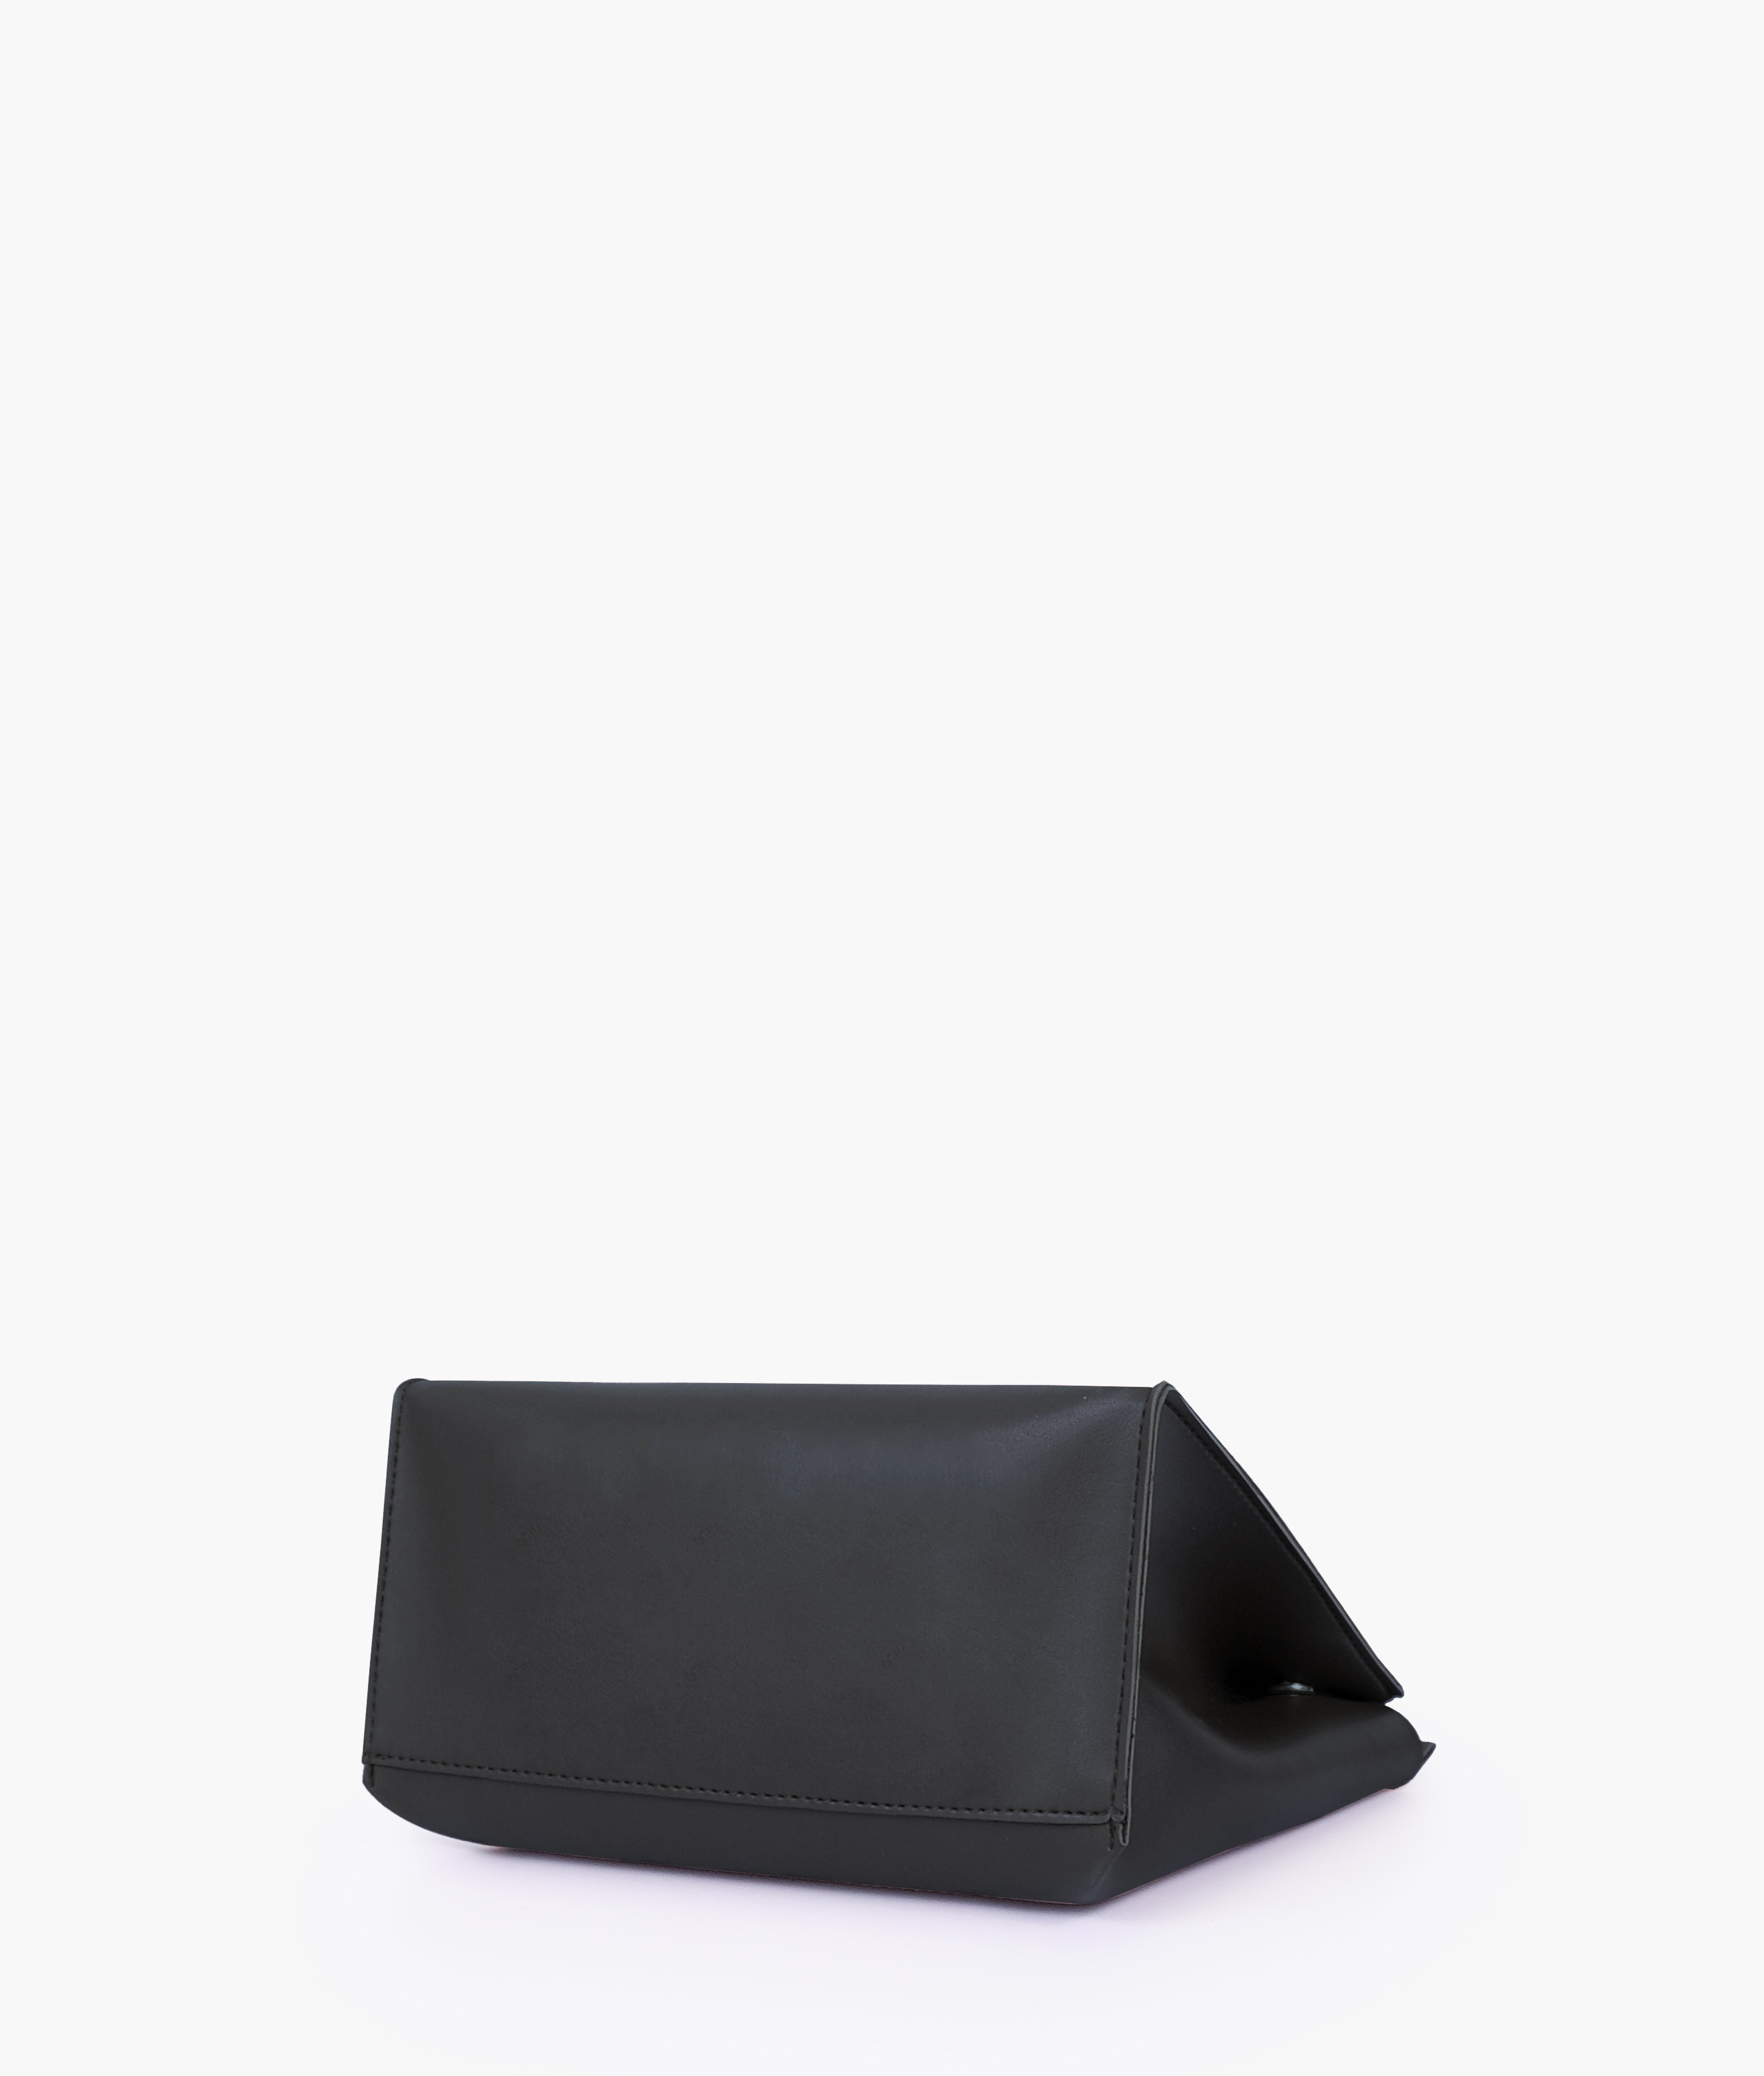 Black front lock top-handle mini bag